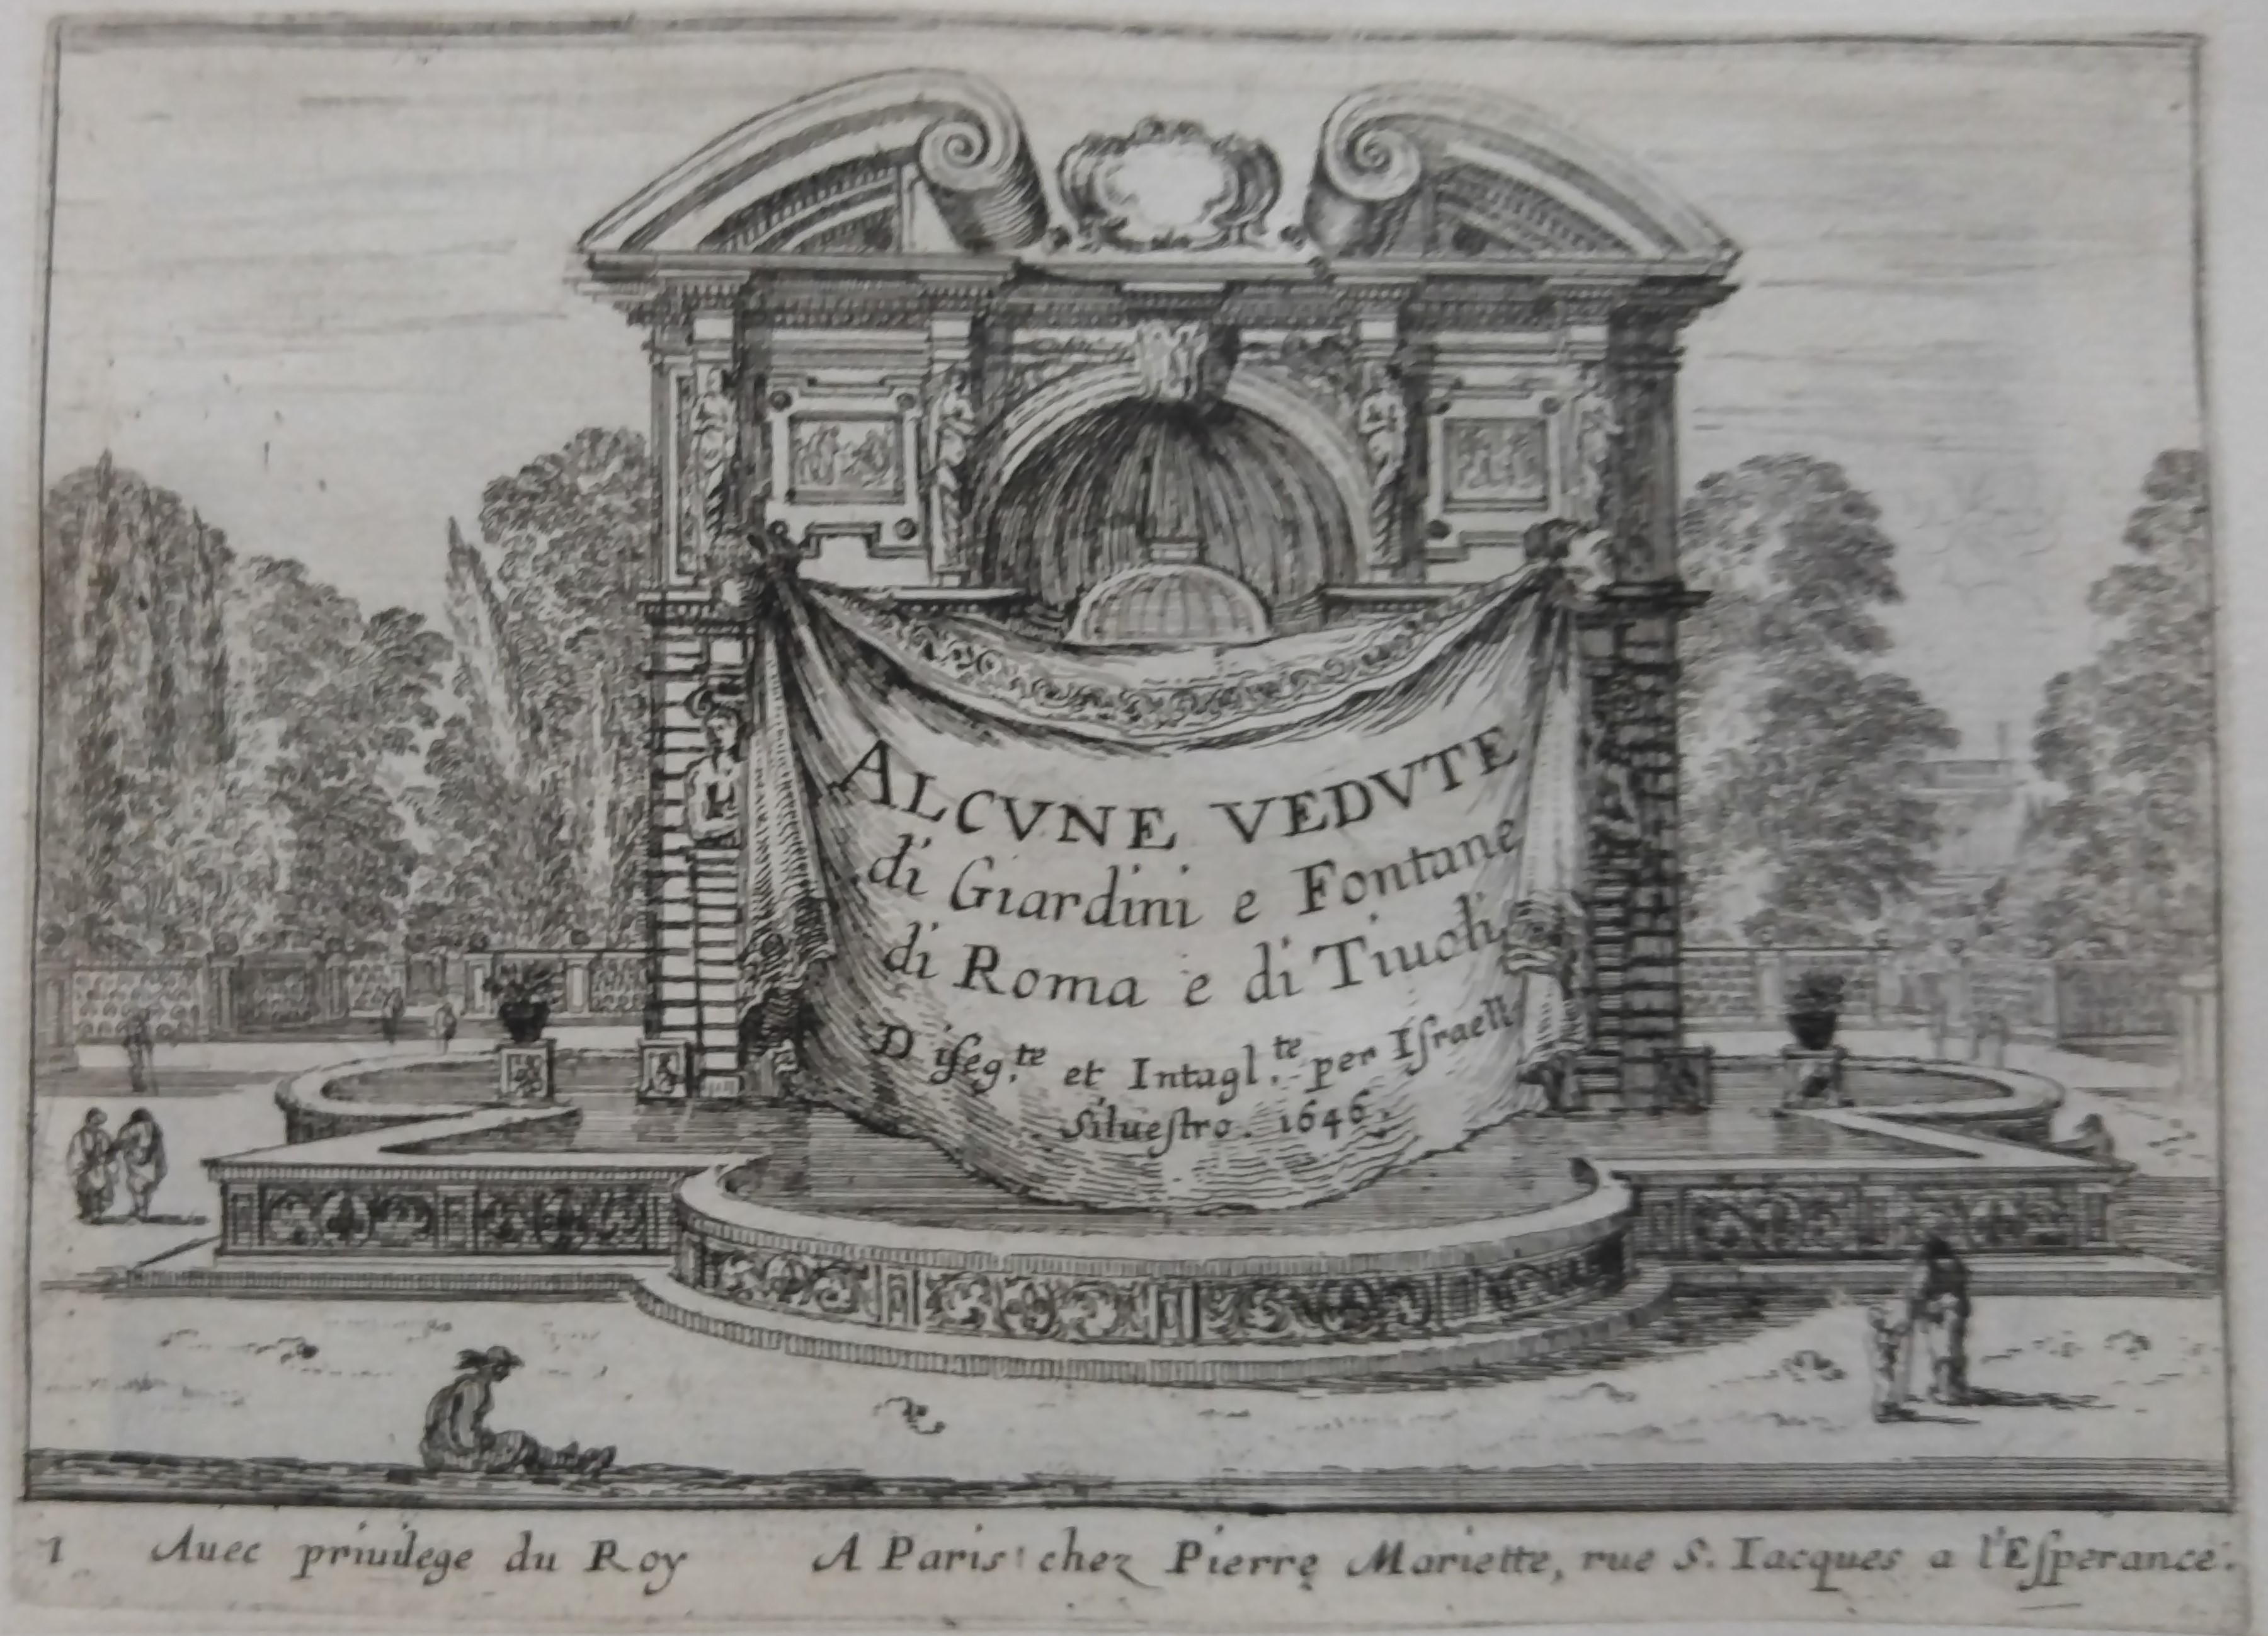 Israël Silvestre : Alcvne vedvte di Giardini e Fontane di Roma e di Tivoli Disegte e Intaglte per Israël Siluestro. 1646.